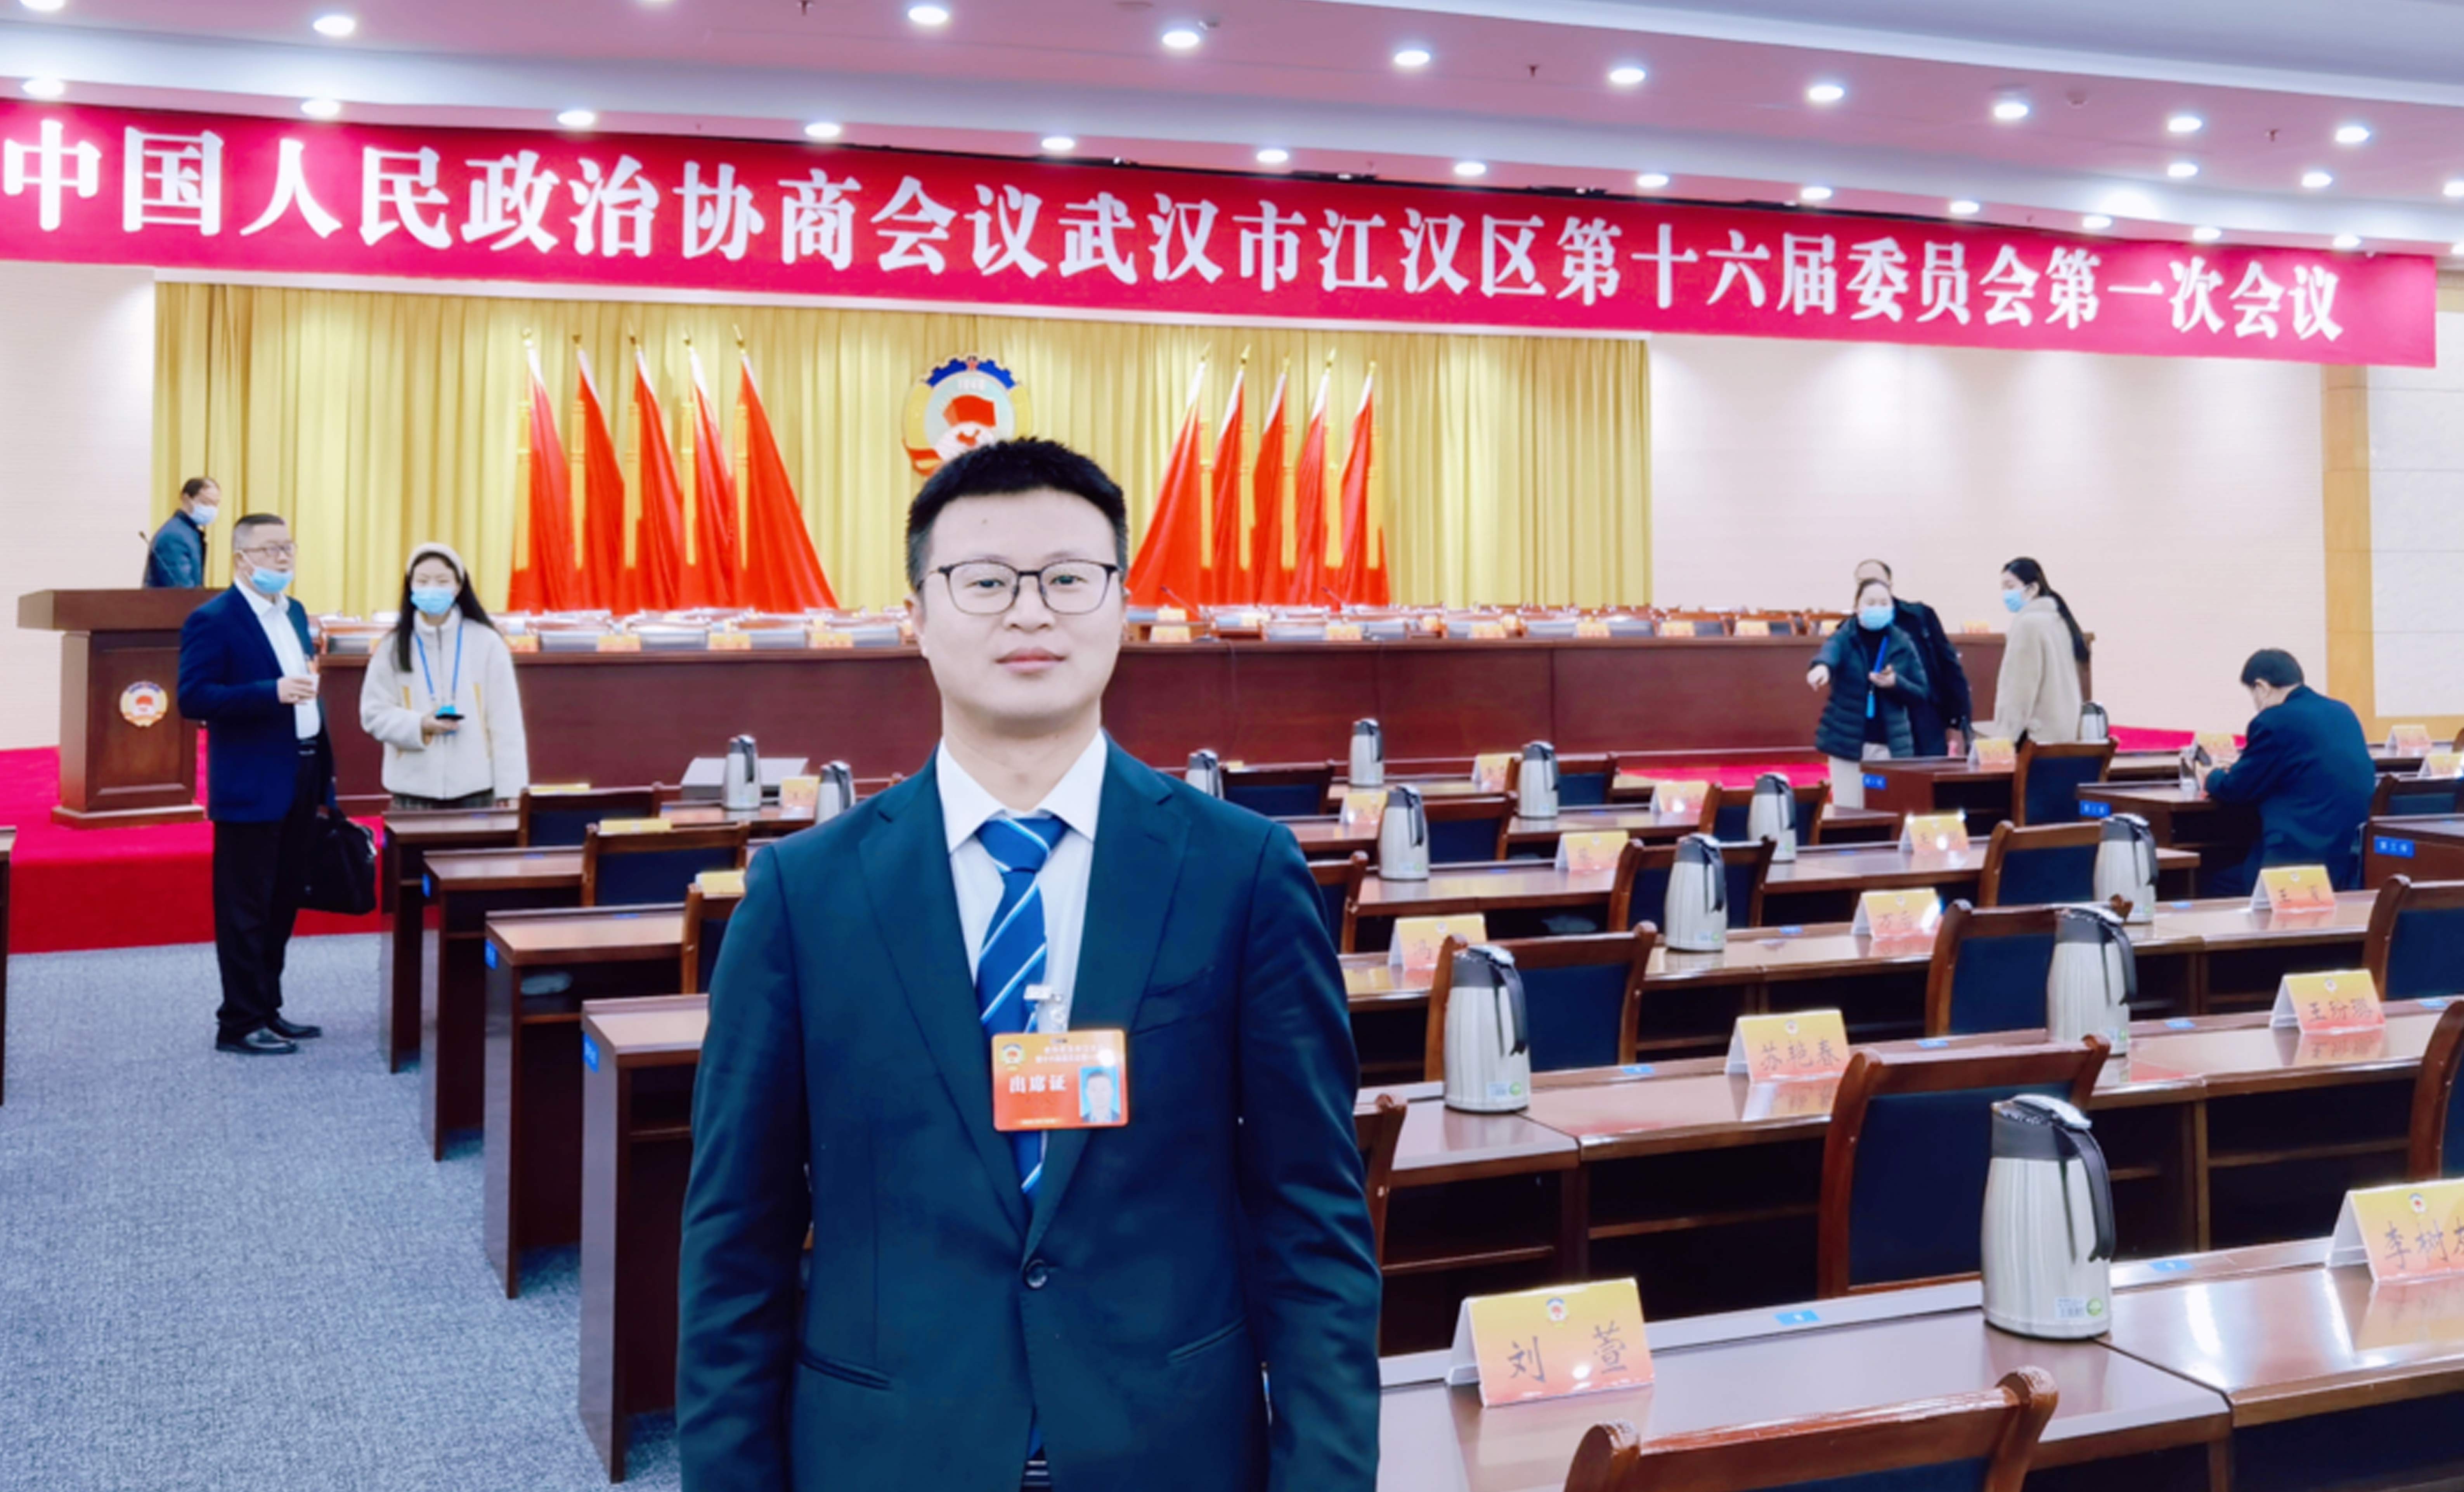  协会吴剑文同志当选为政协武汉市江汉区第十六届委员会委员 